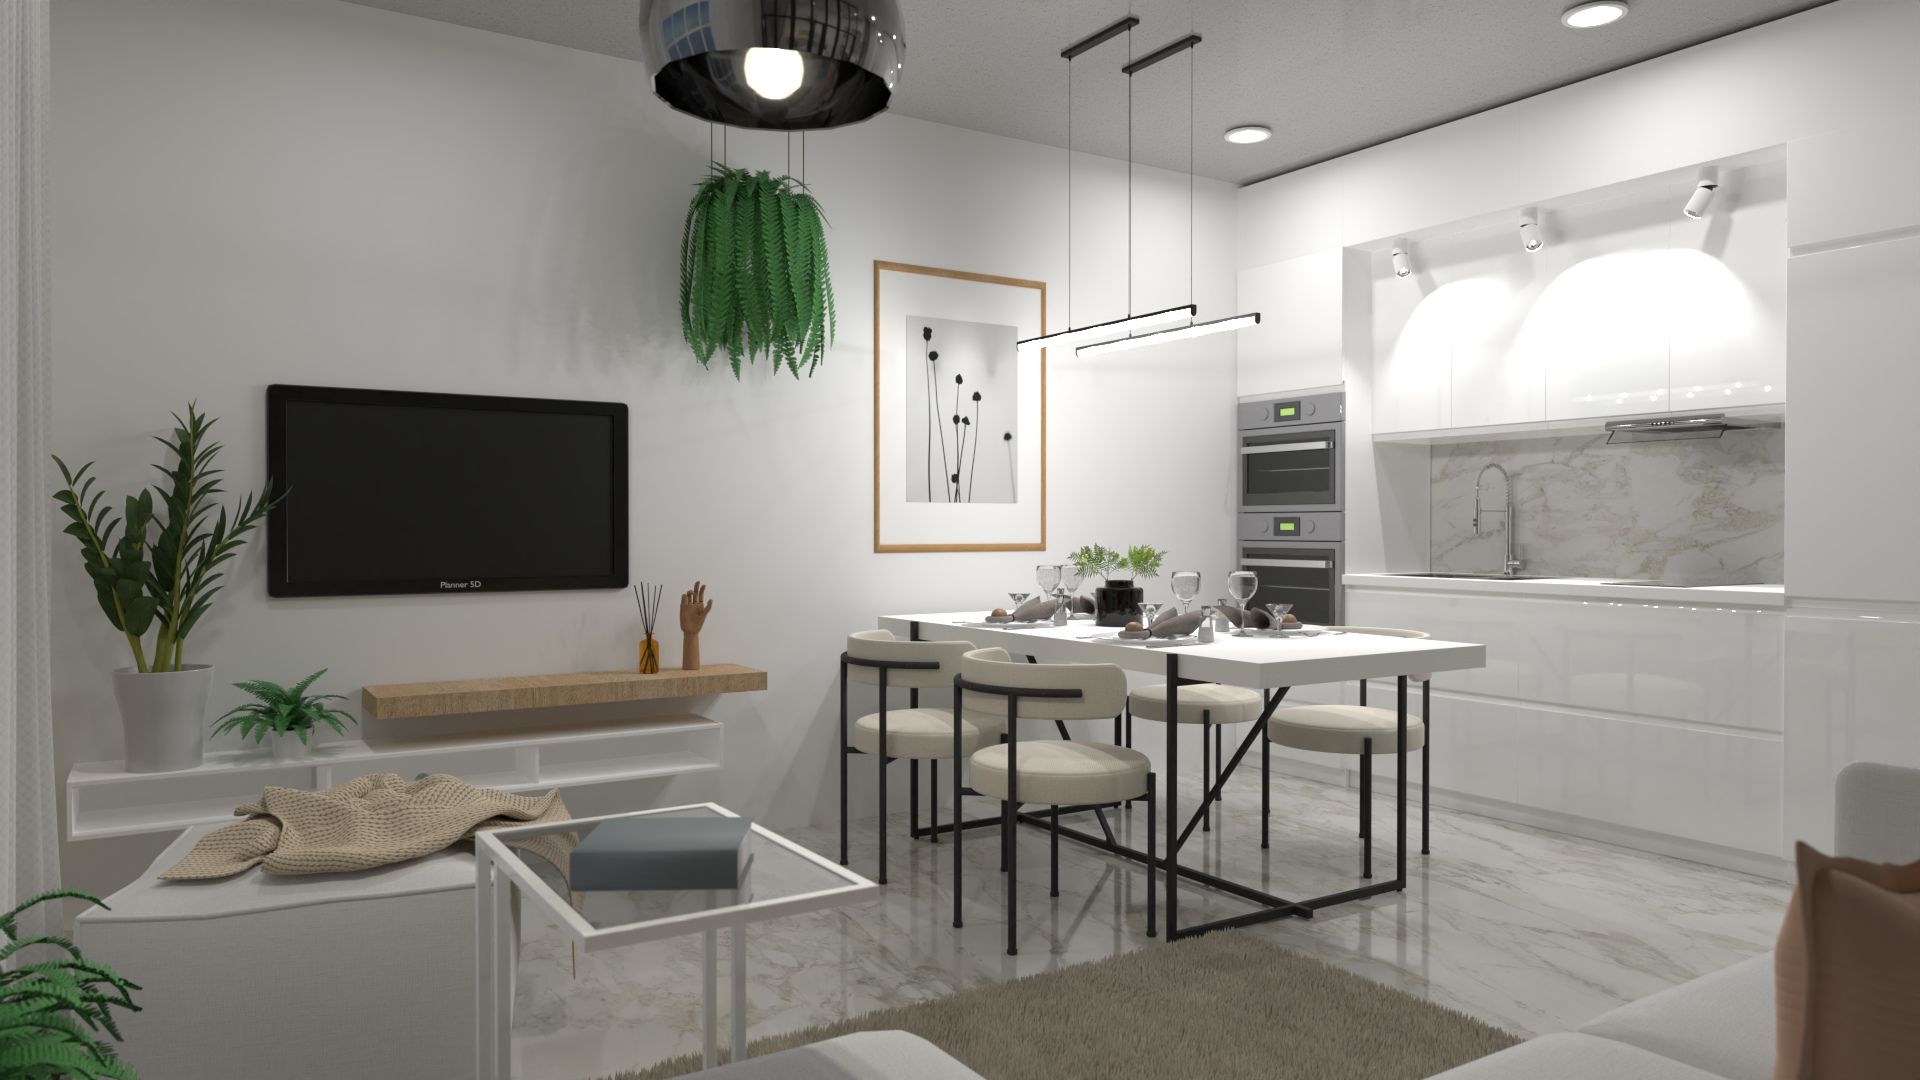 Moderno studio apartamento por Natasha no Planner 5D